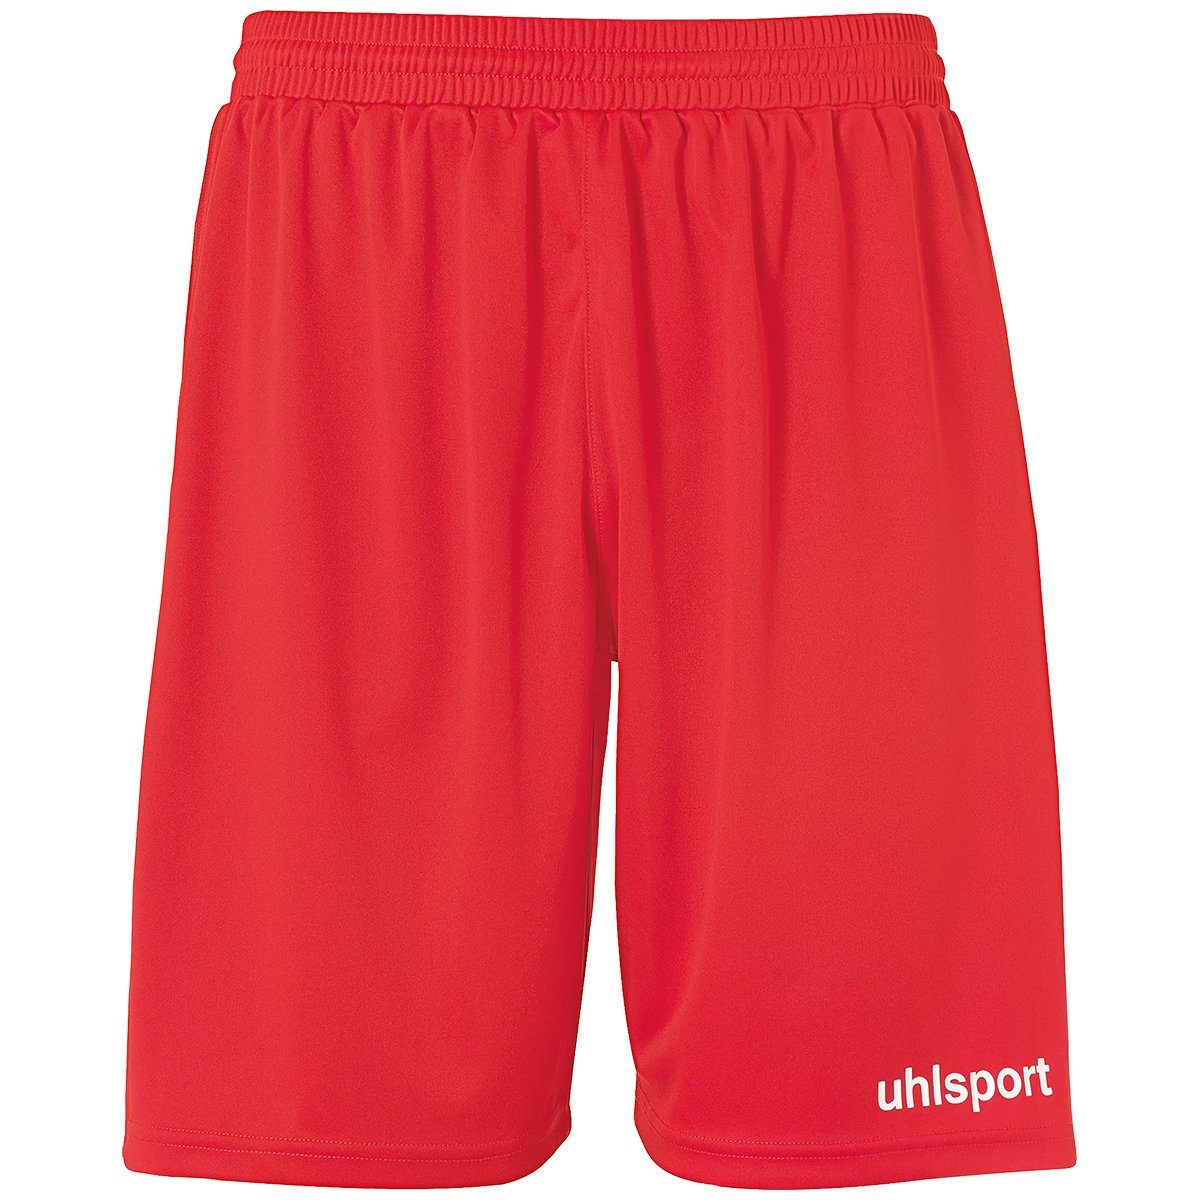 SHORTS rot/weiß uhlsport PERFORMANCE Shorts uhlsport Shorts